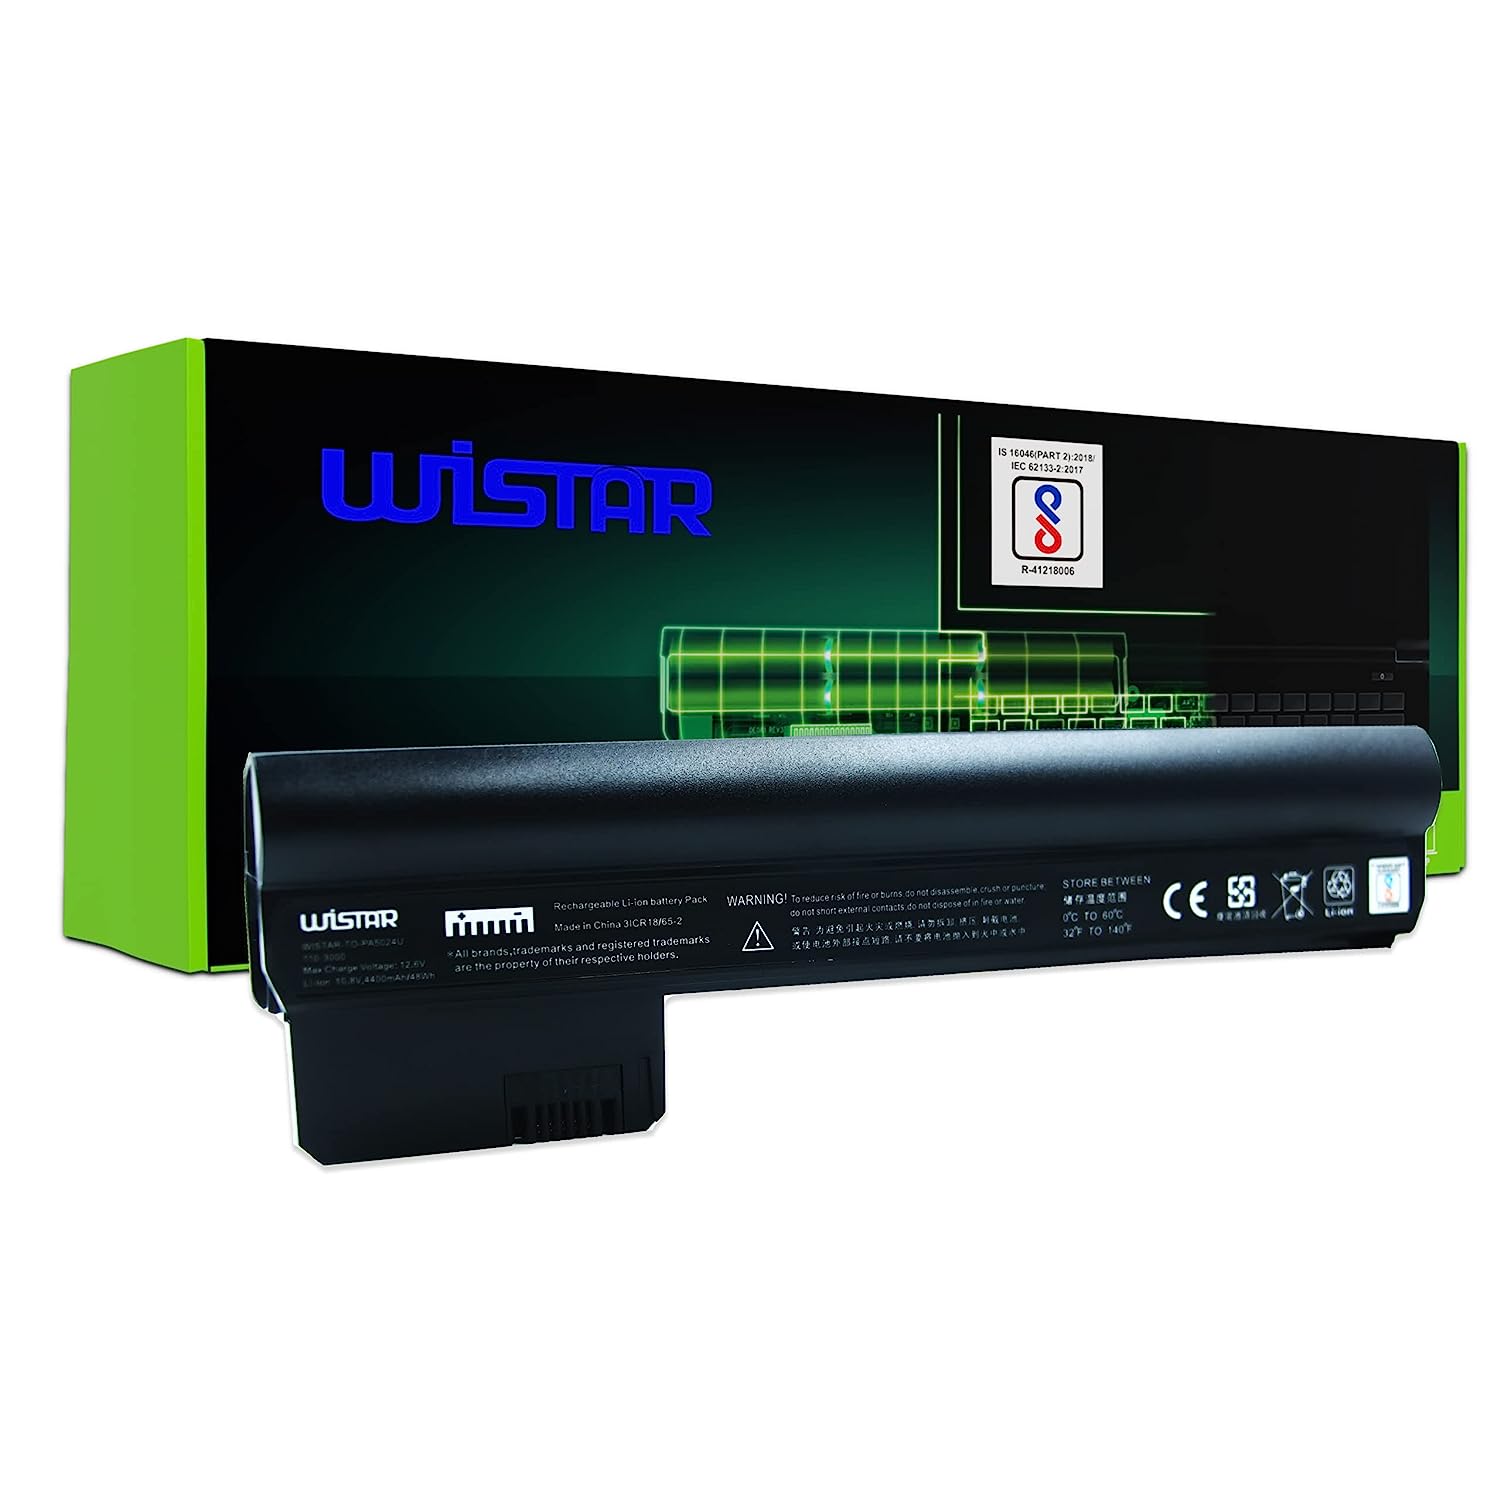 WISTAR Laptop Battery for HP Compaq Mini CQ10, Mini 110-3000, Mini 110-3100, Mini 110-3000 Series with Model 607762-001, 607763-001, HSTNN-DB1U, WQ001AA